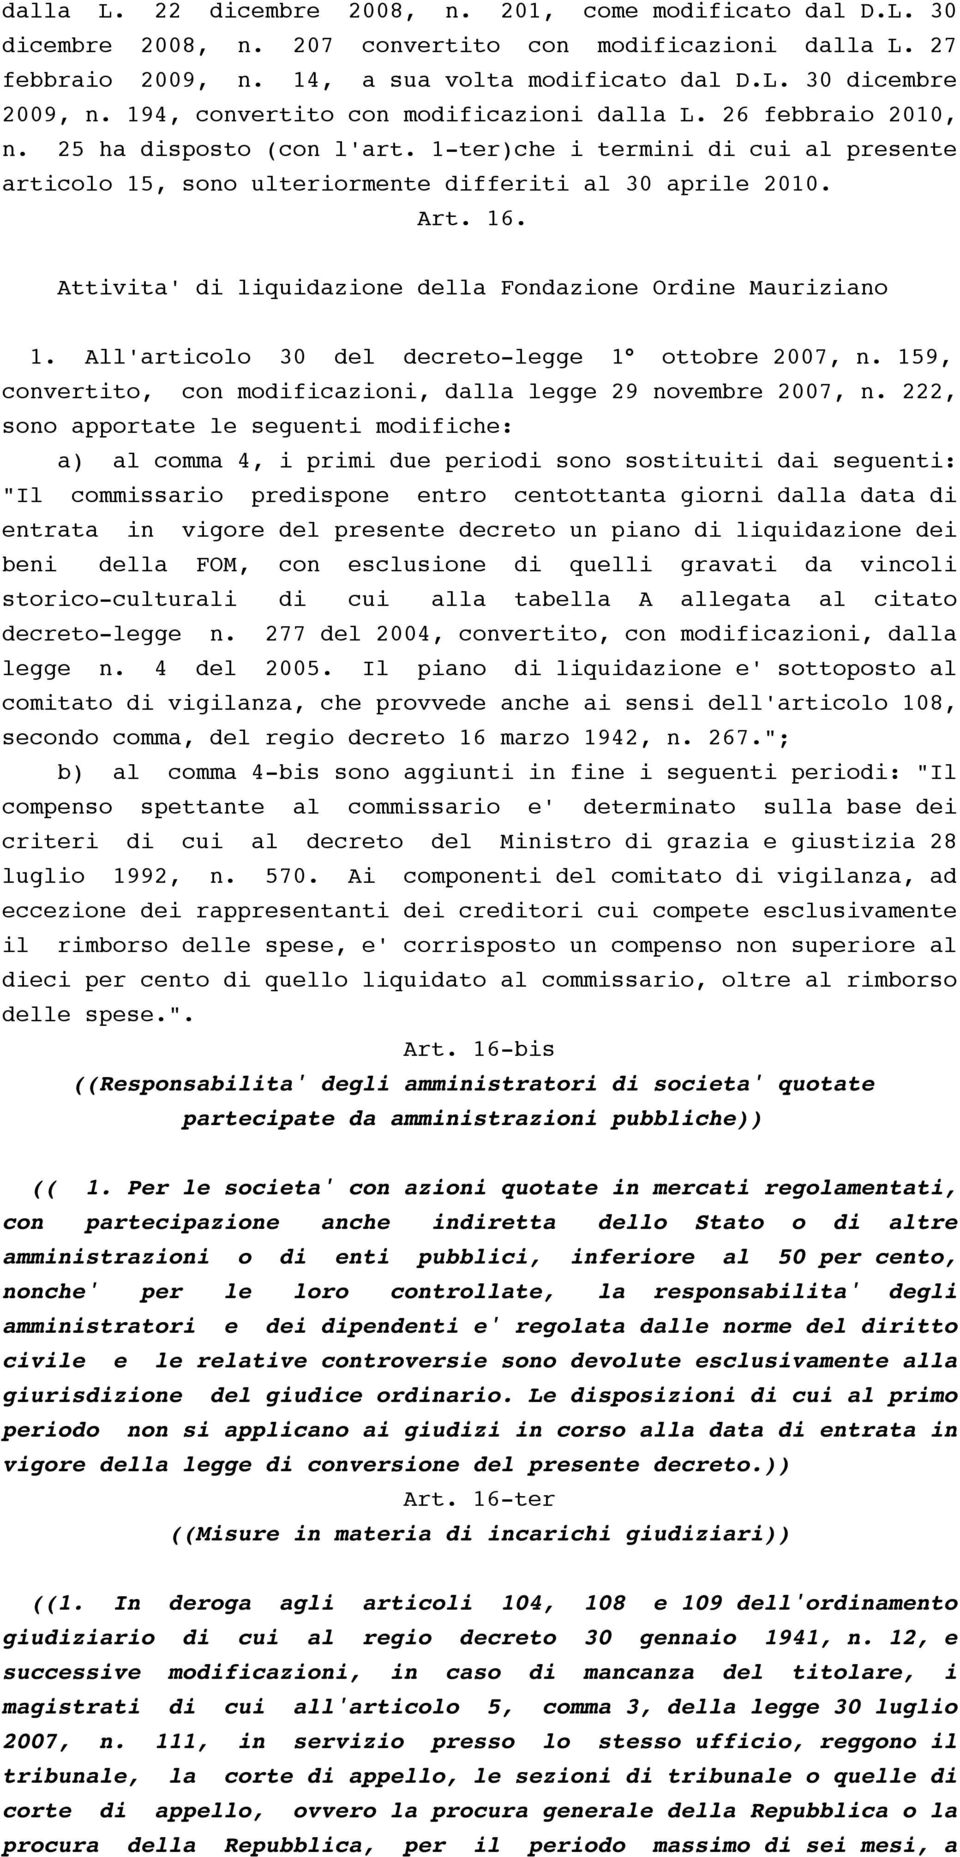 Attivita' di liquidazione della Fondazione Ordine Mauriziano 1. All'articolo 30 del decreto-legge 1 ottobre 2007, n. 159, convertito, con modificazioni, dalla legge 29 novembre 2007, n.